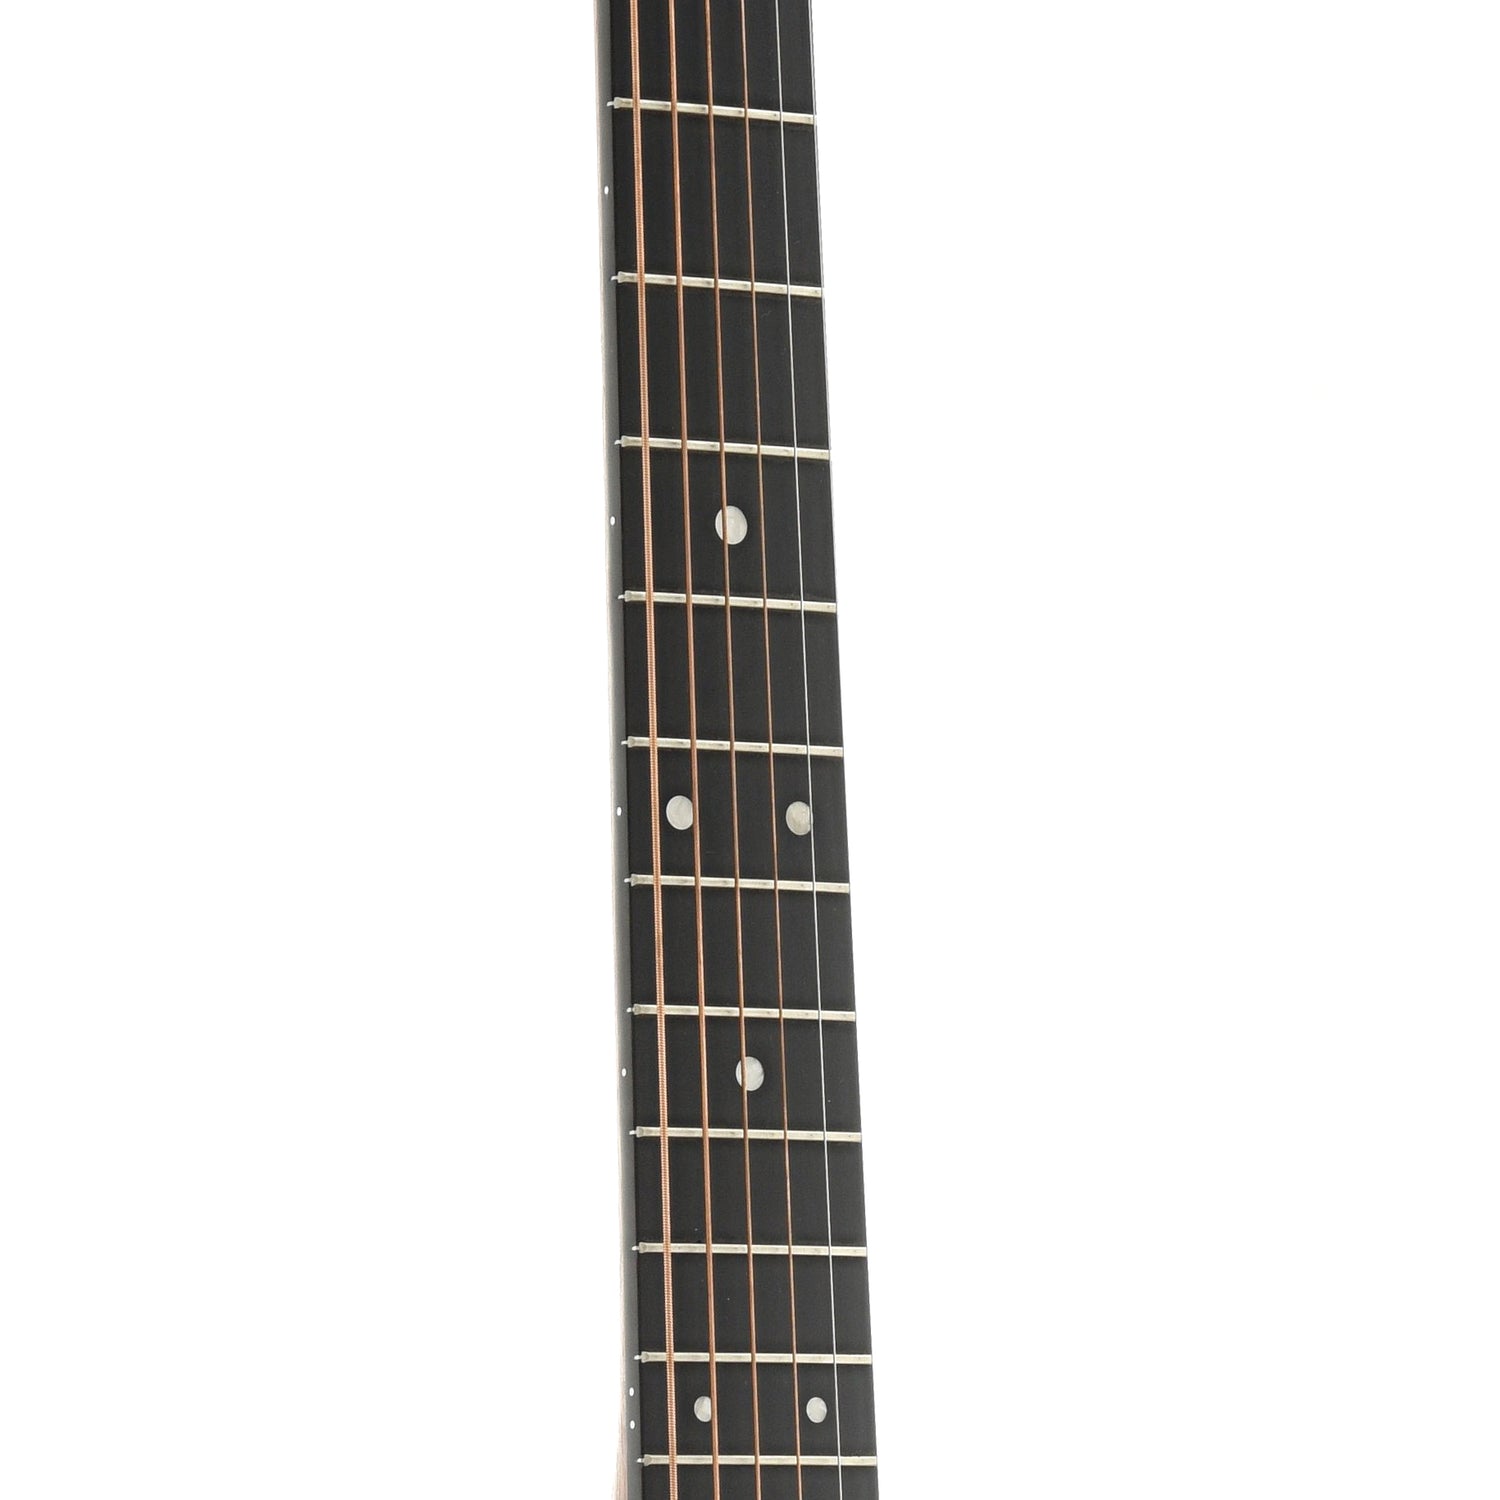 Fretboard of Martin D-12E Koa Guitar 